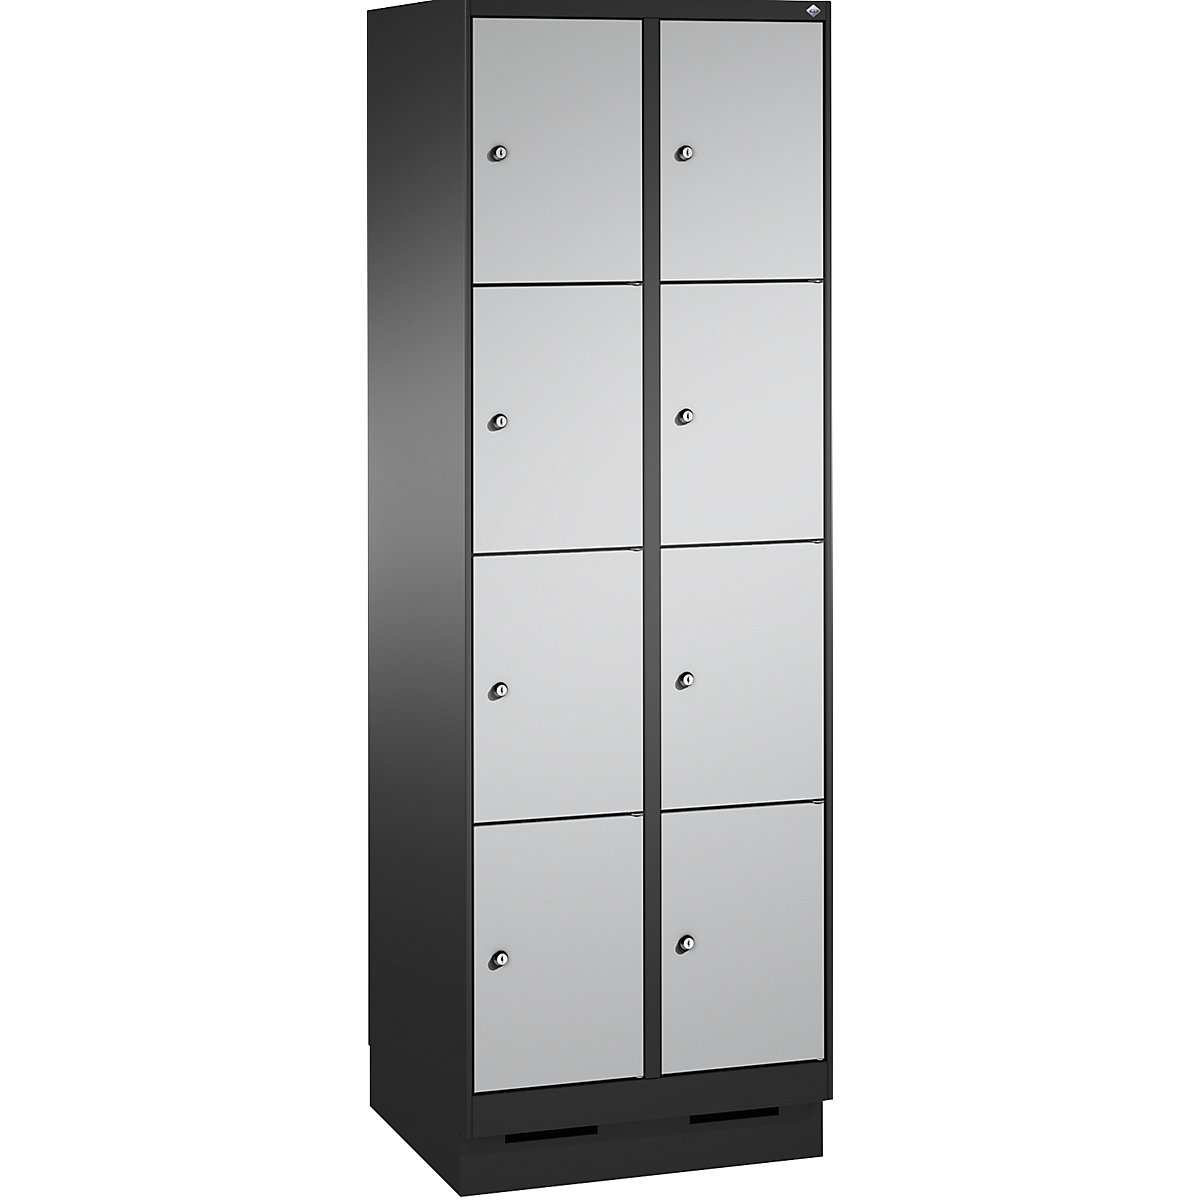 Armoire à casiers sur socle EVOLO – C+P, 2 compartiments, 4 casiers chacun, largeur compartiments 300 mm, gris noir / aluminium-9